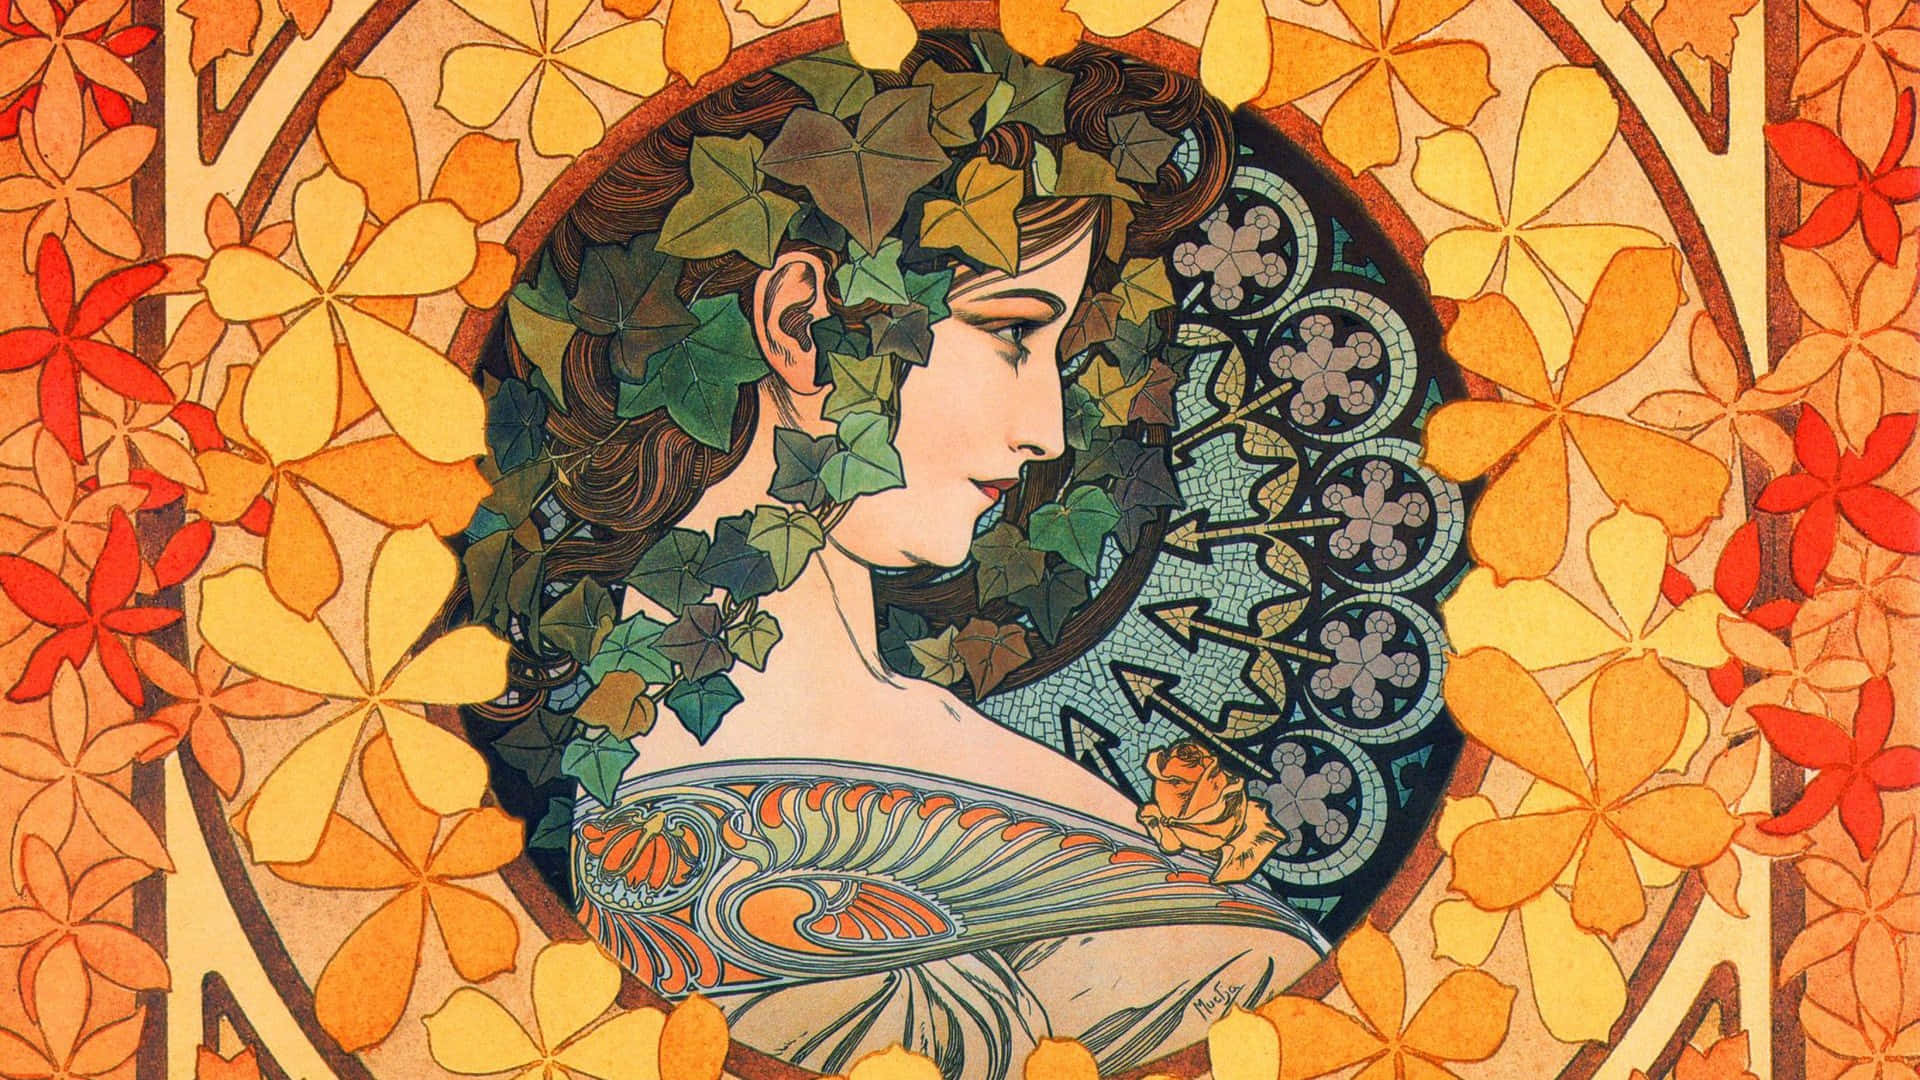 [100+] Papéis de Parede de Art Nouveau | Wallpapers.com